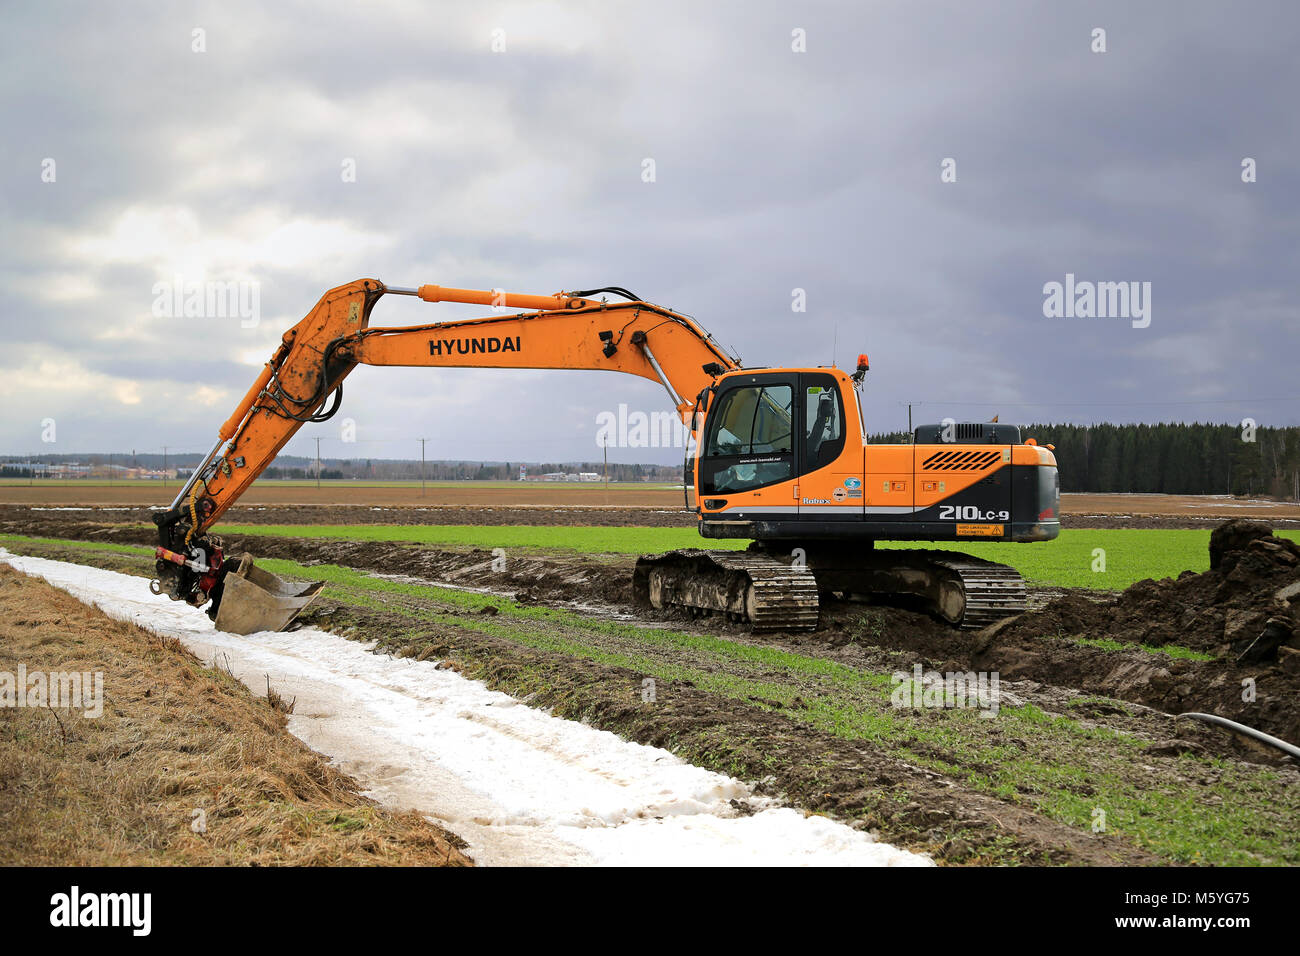 AURA, Finlandia - 1 Marzo 2015: Hyundai Robex 210 LC-9 Escavatore cingolato su un campo. L'R210LC-9 ha estensione in senso orizzontale di 10,9 m e dregding profondità di Foto Stock